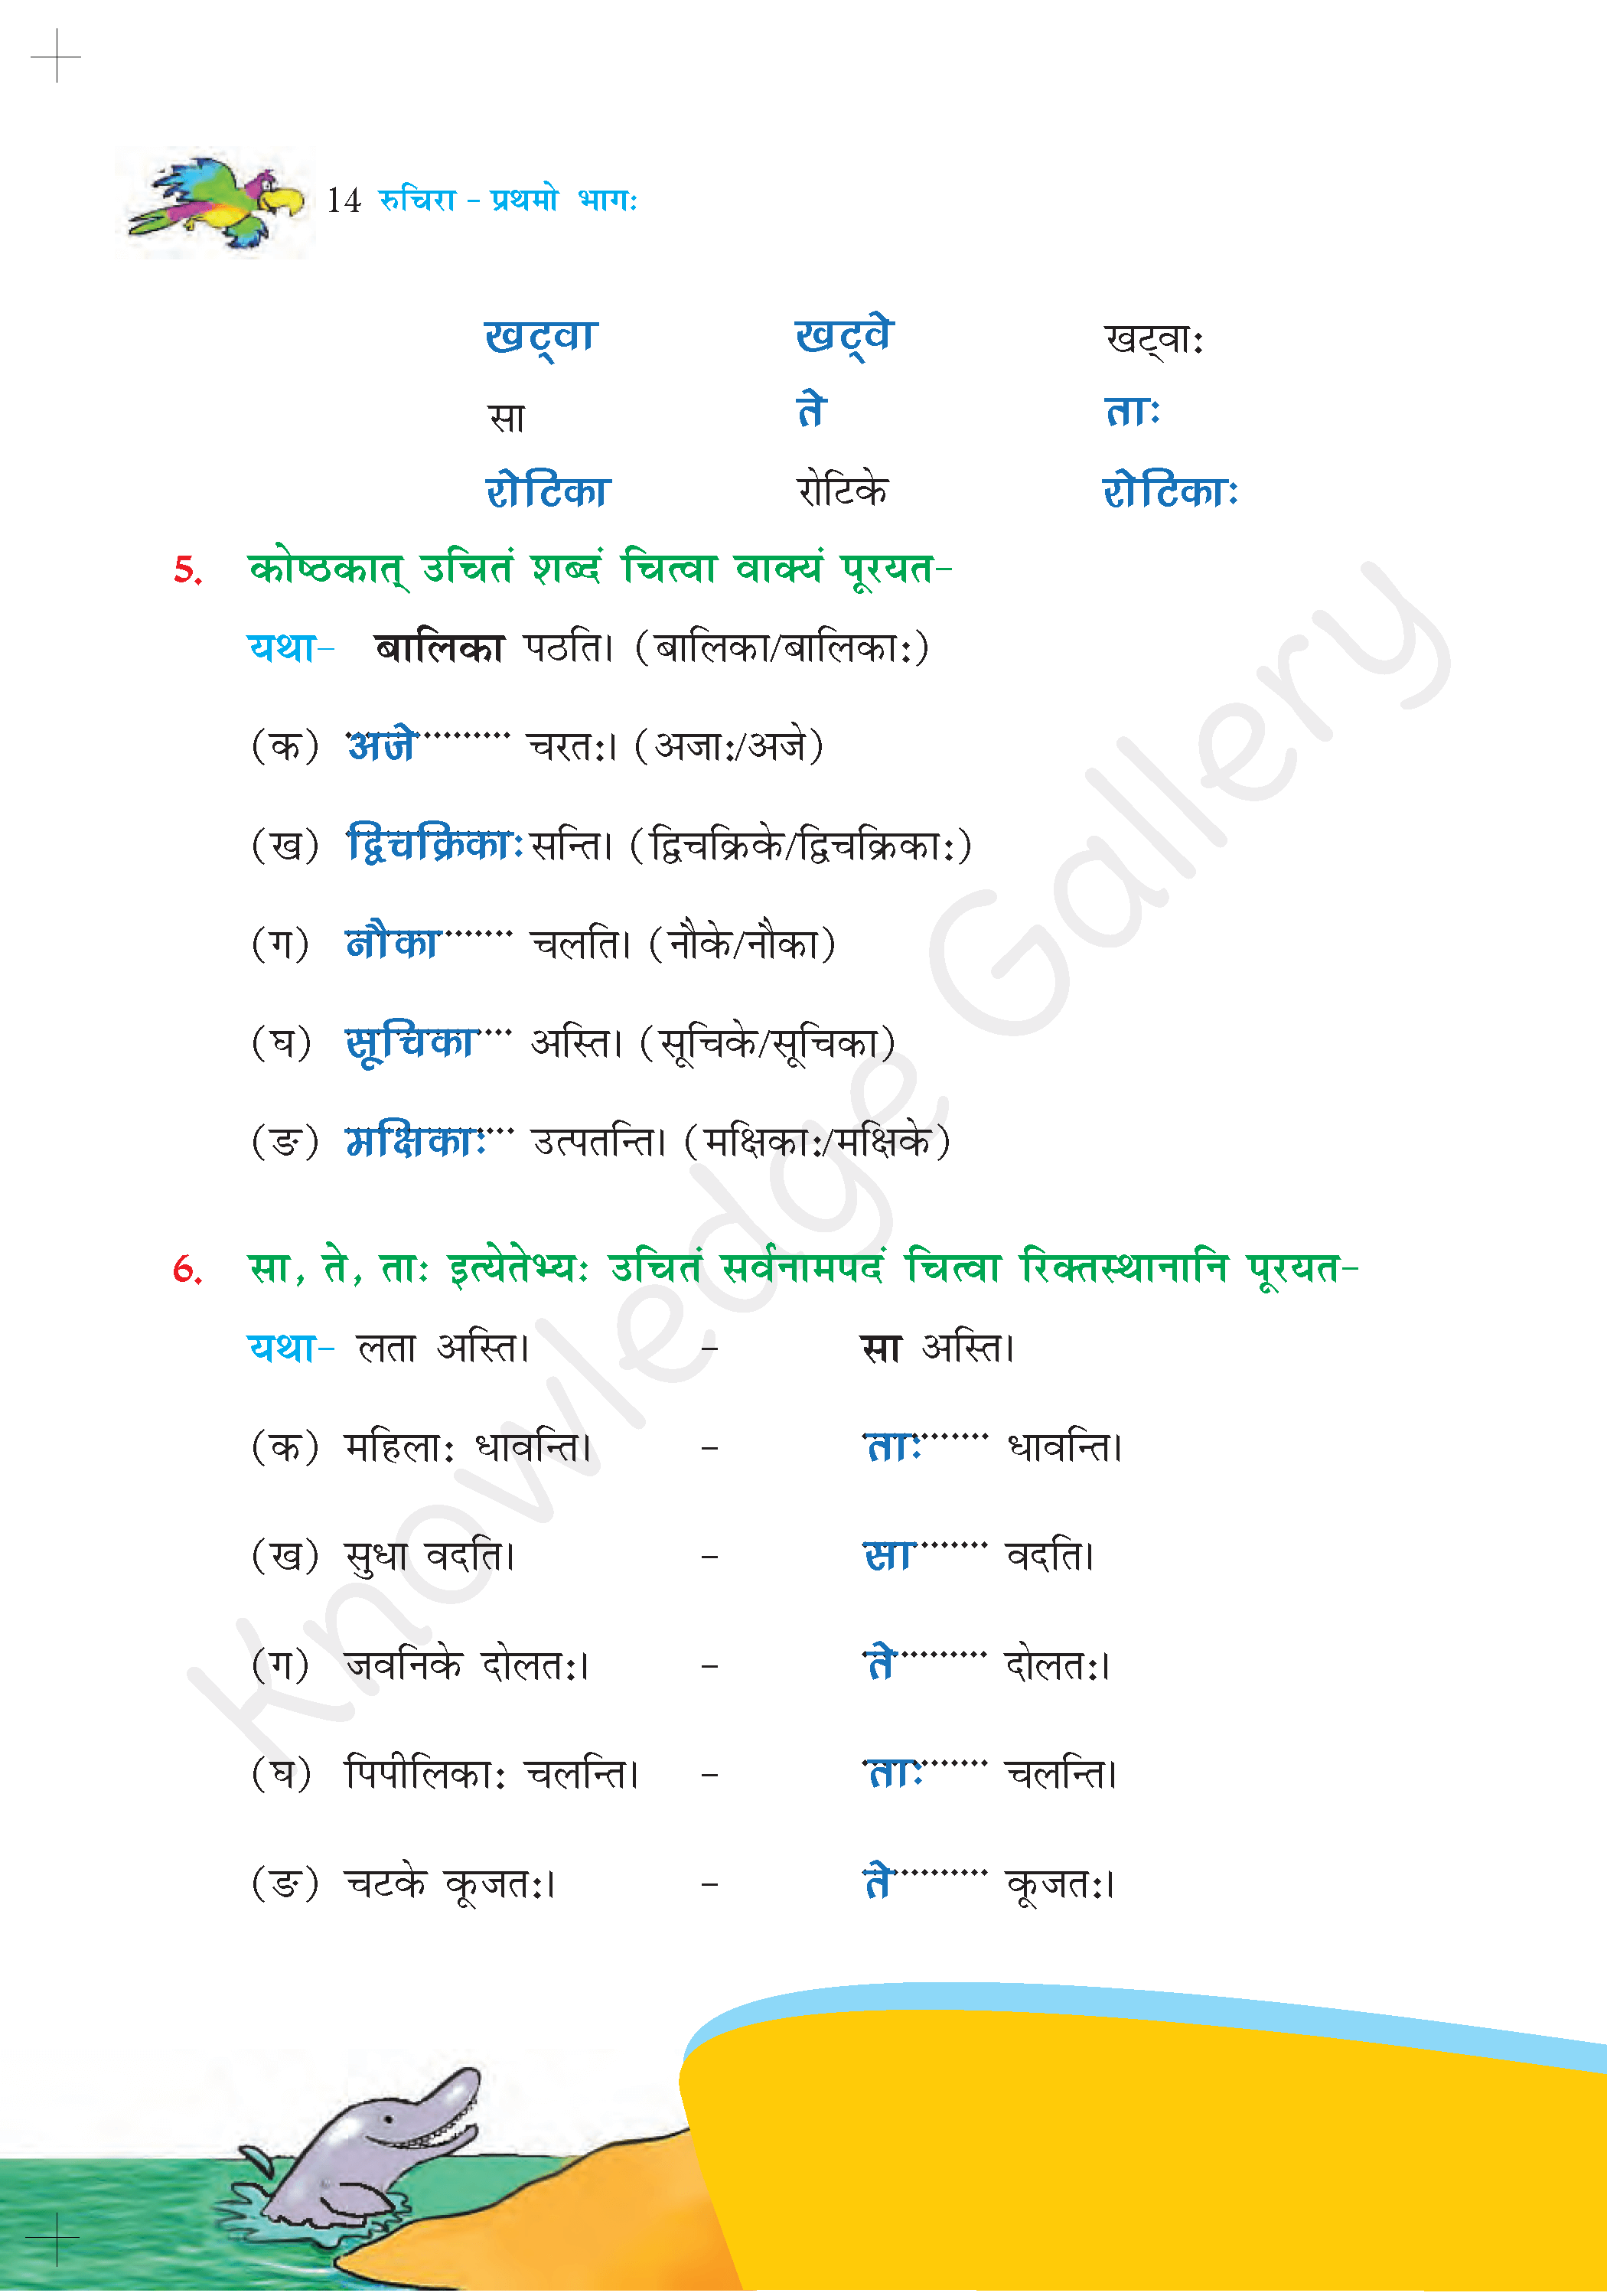 NCERT Solution For Class 6 Sanskrit Chapter 2 part 6